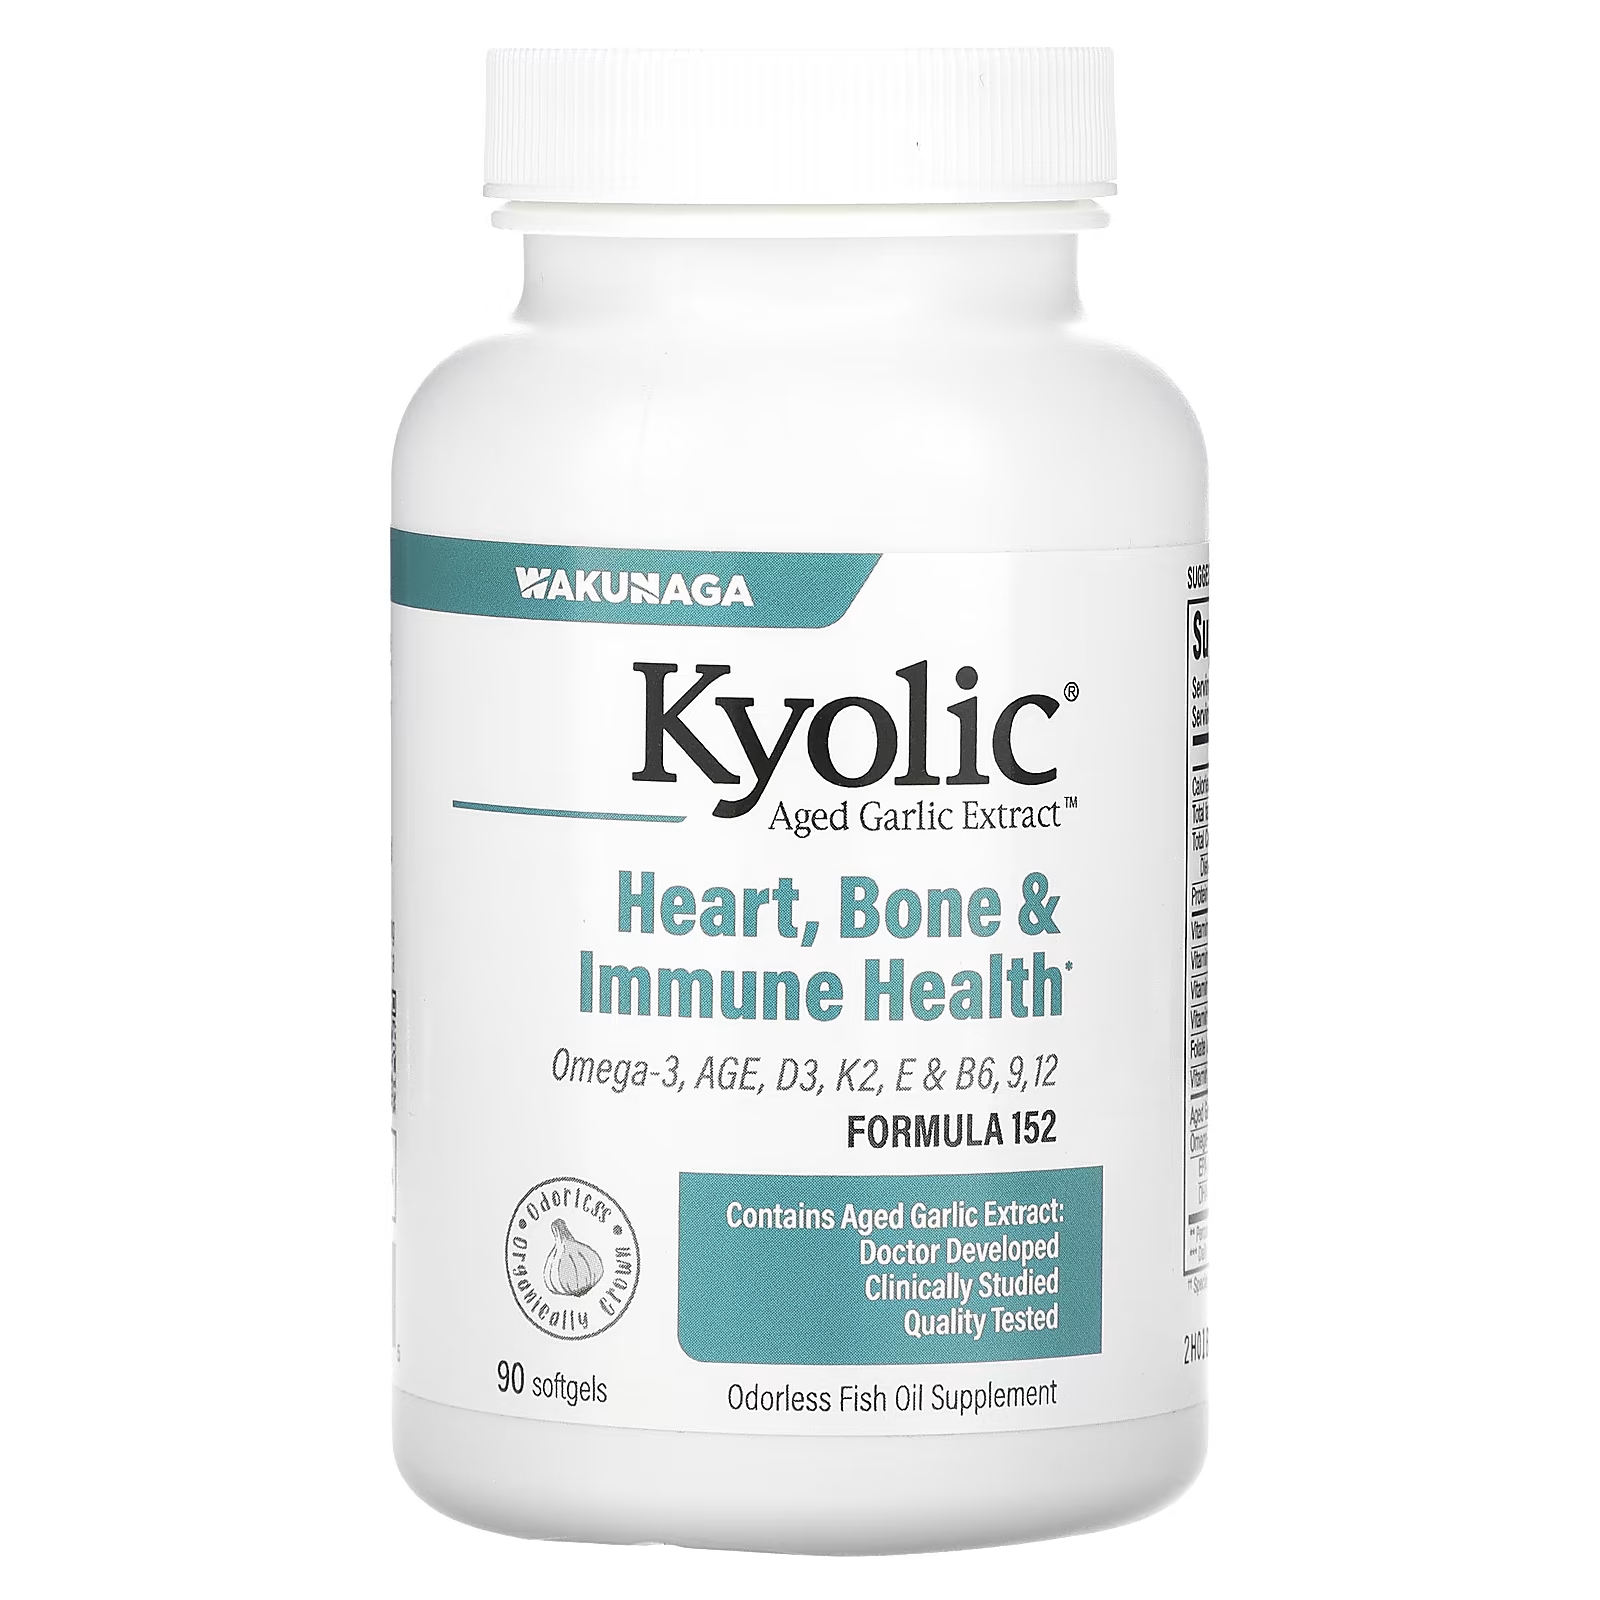 Здоровье костей и иммунитета Kyolic, 90 мягких таблеток kyolic aged garlic extract выдержанный экстракт чеснока с омега 3 улучшение холестеринового баланса и кровообращения 90 капсул с омега 3